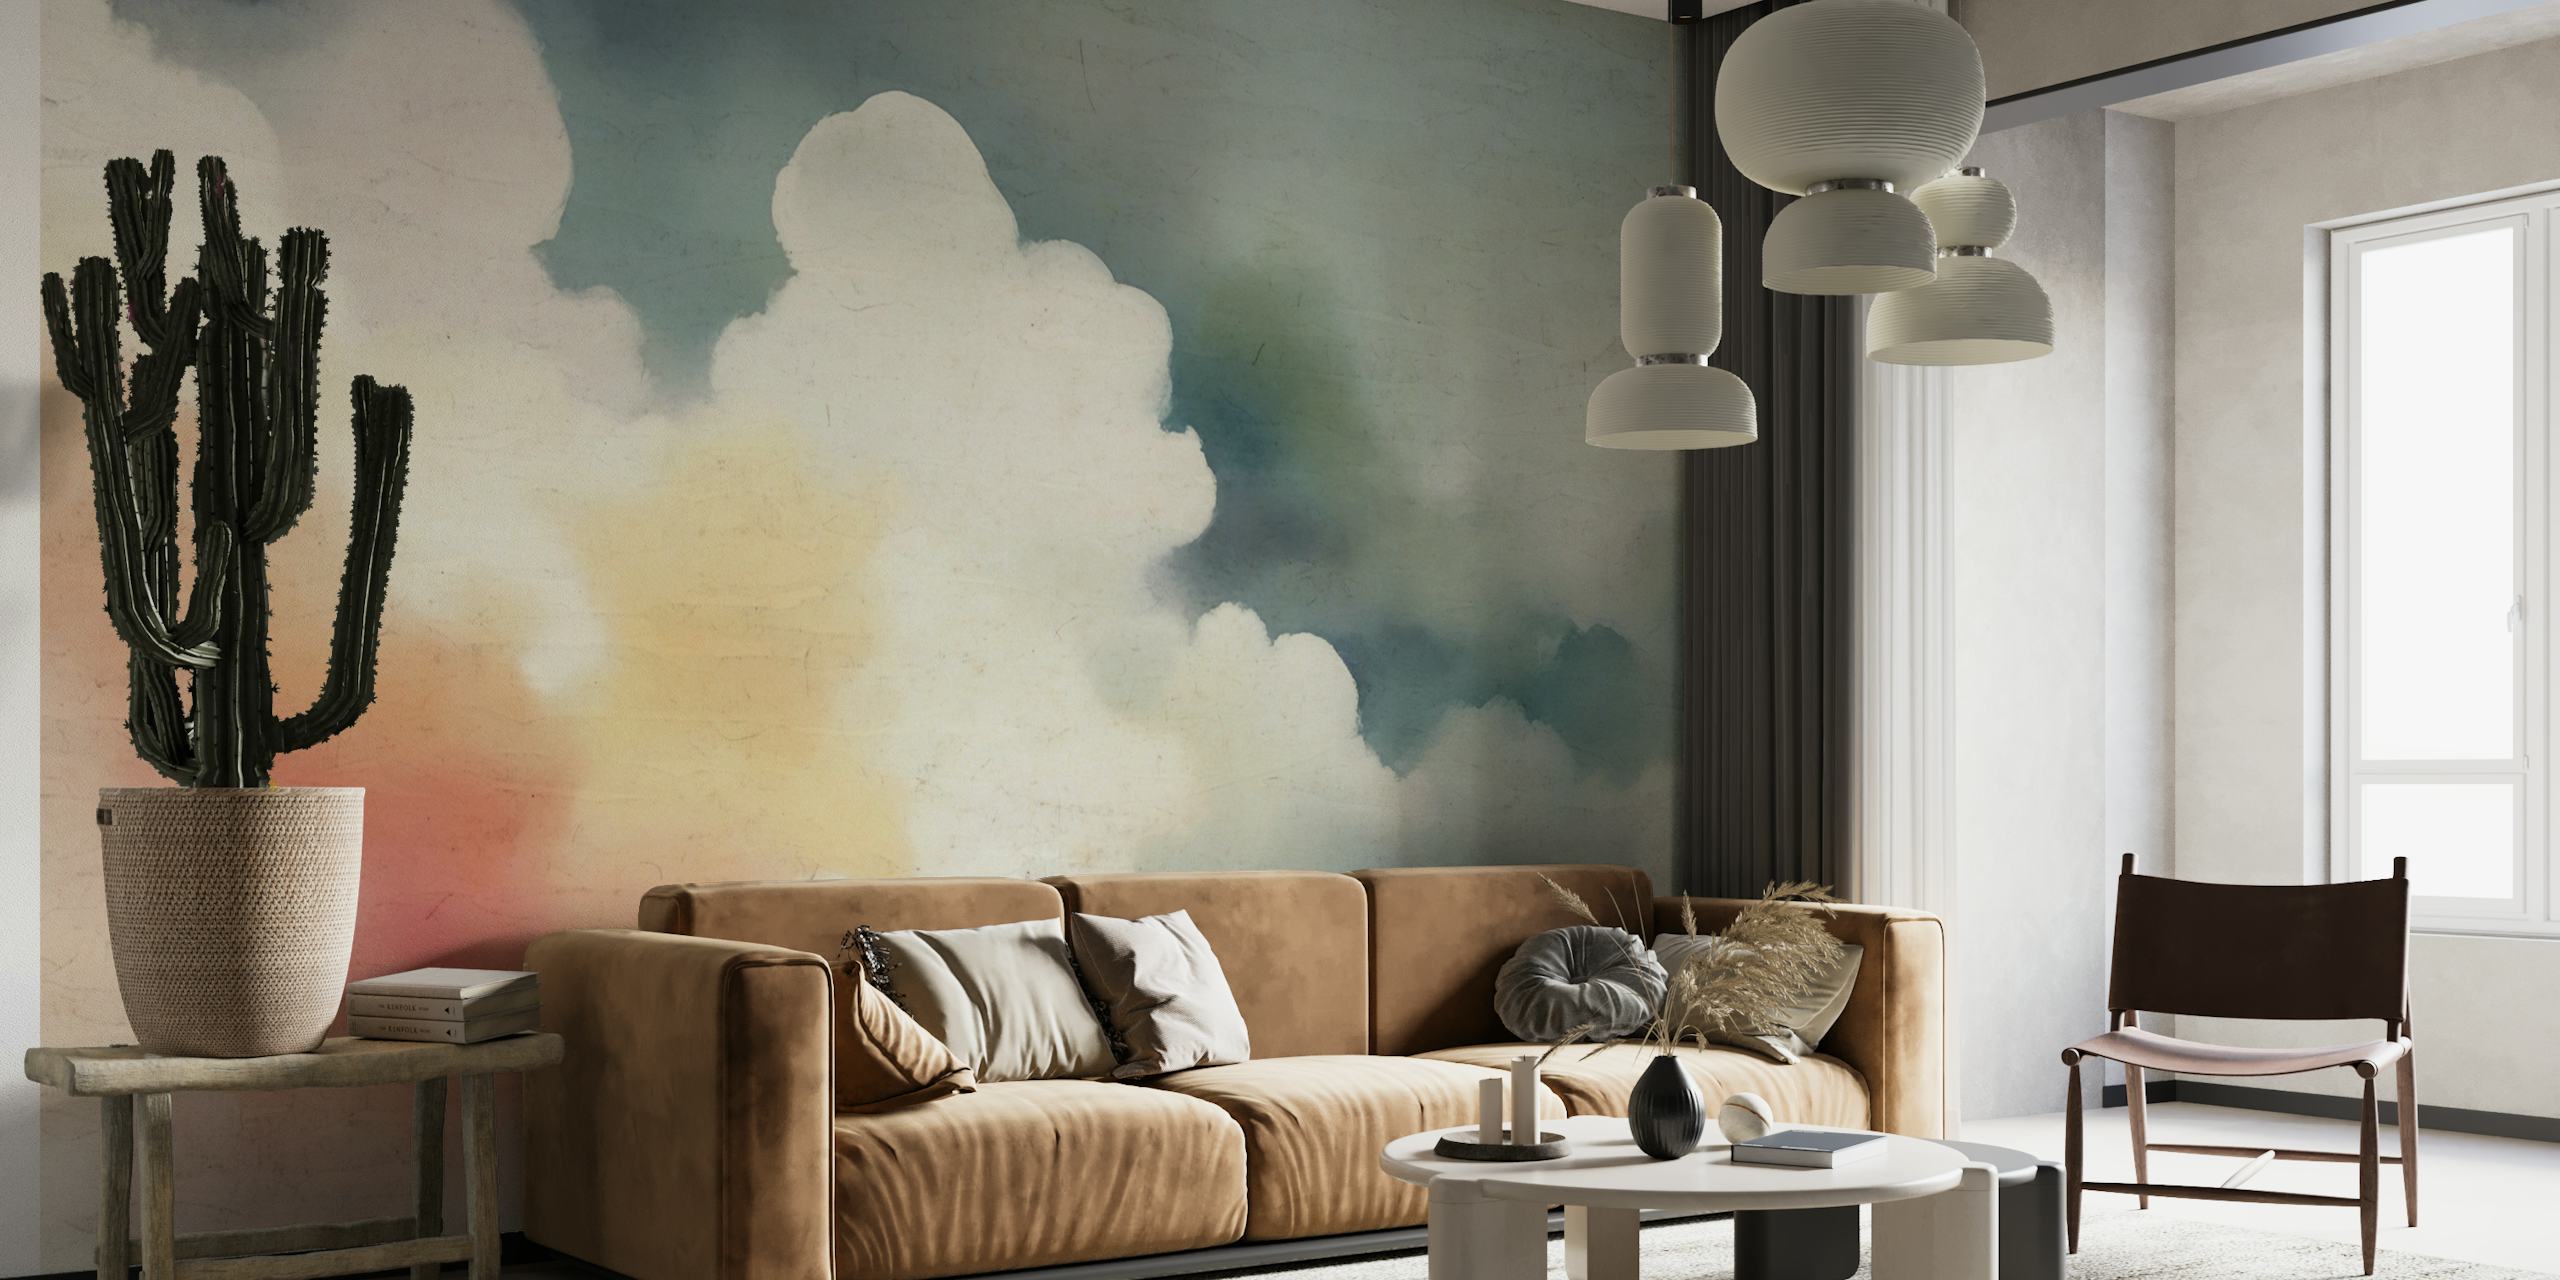 Mural de nubes en colores pastel que evoca tranquilidad y serenidad